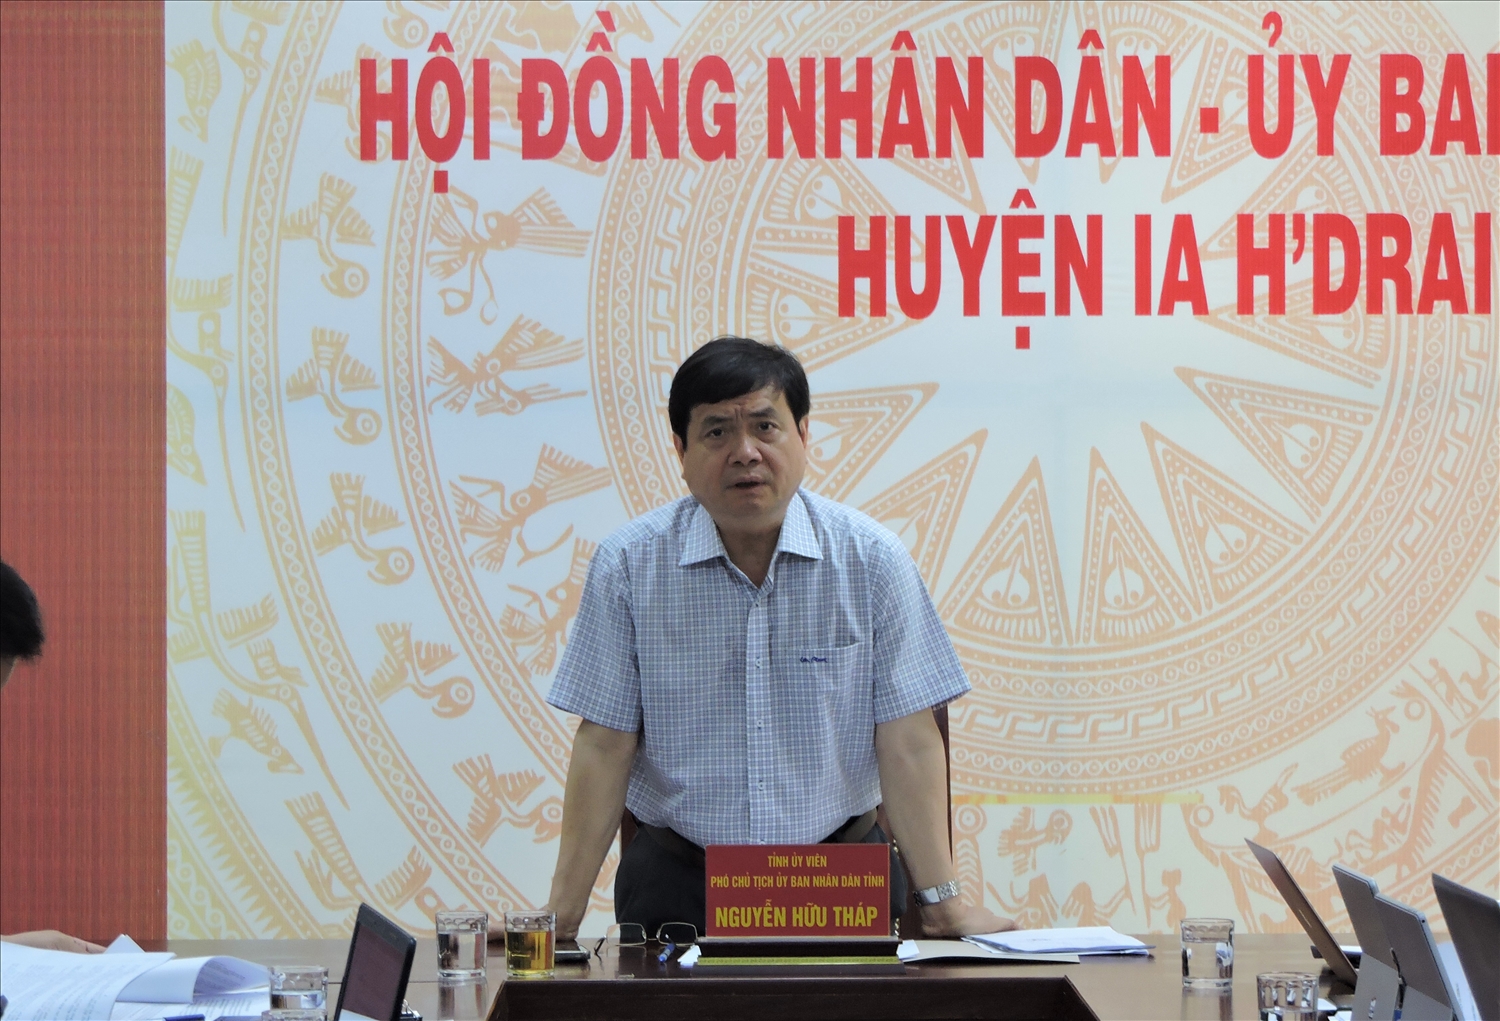 Ông Nguyễn Hữu Tháp – Phó Chủ tịch UBND tỉnh Kon Tum kết luận buổi kiểm tra